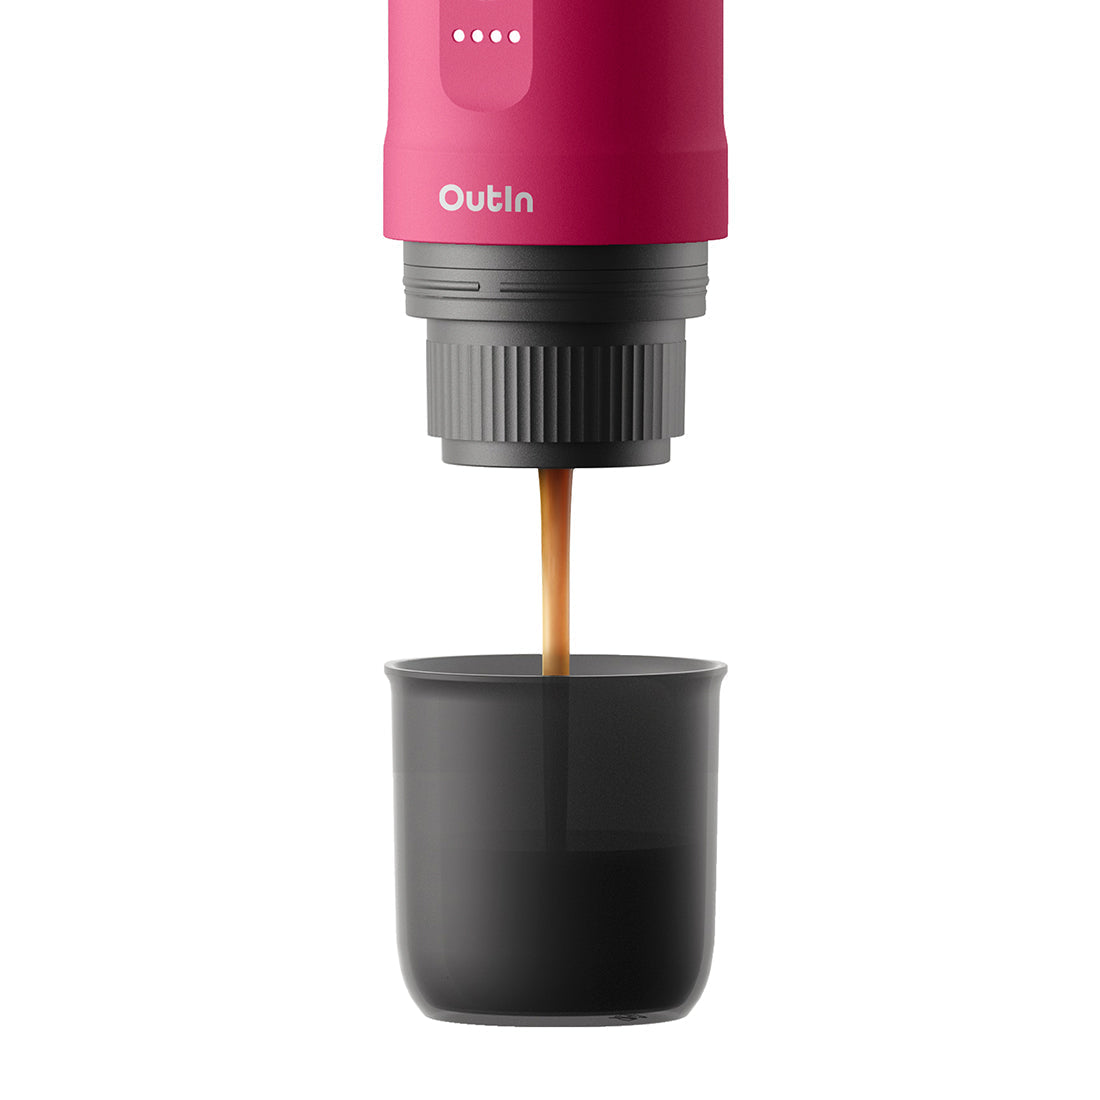 Nano máquina de café expresso portátil (vermelho carmesim)